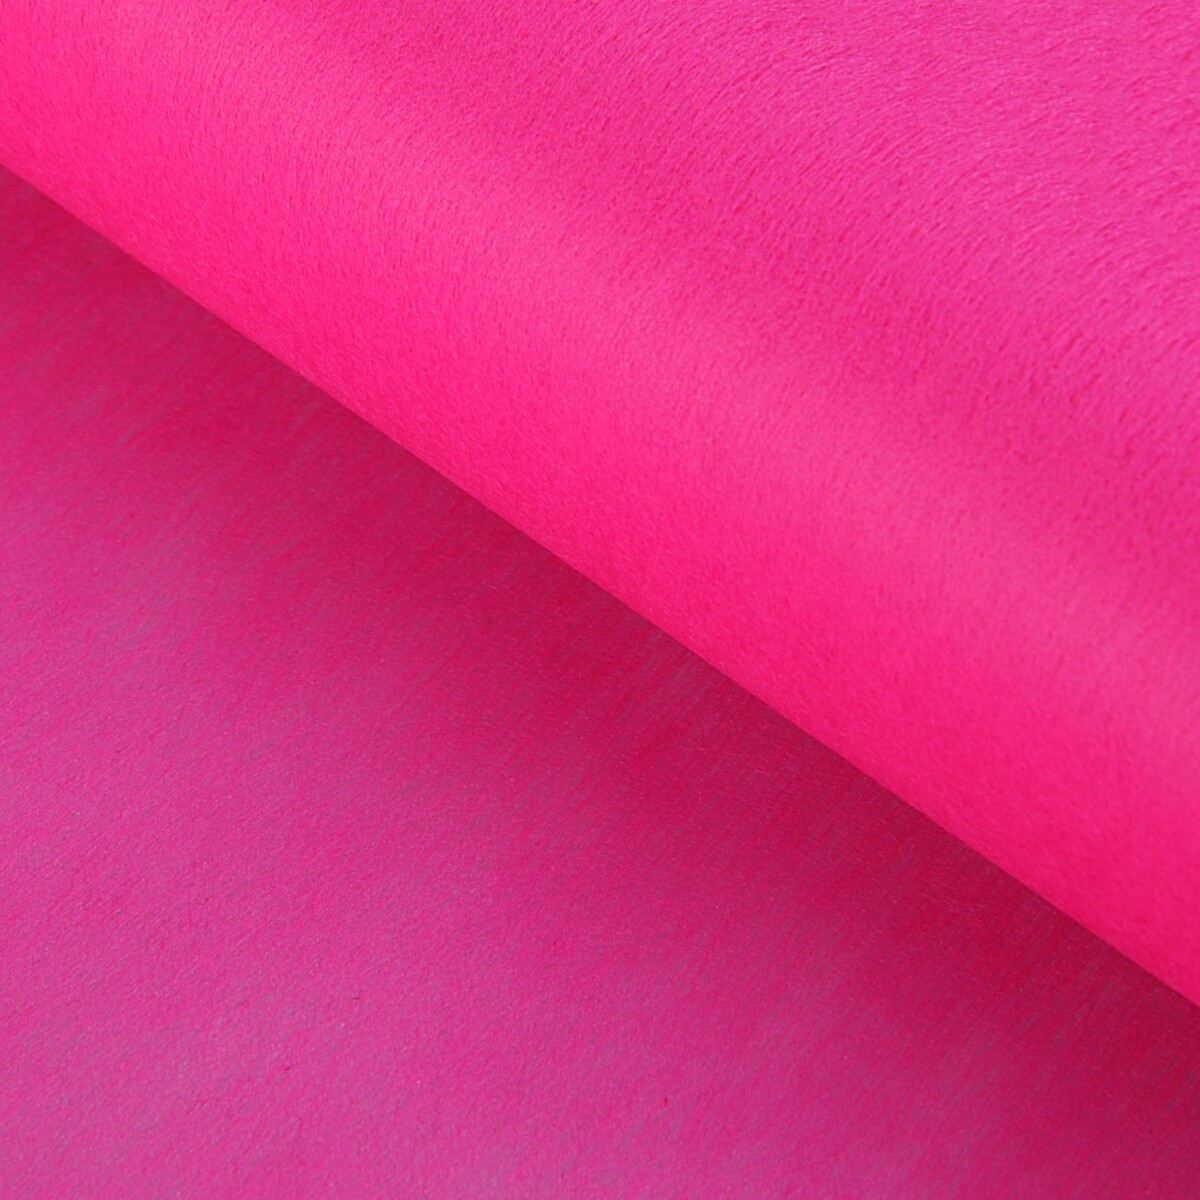 Фетр для упаковок и поделок, однотонный, ярко-розовый, однотонный, двусторонний, рулон 1шт., 50 см x 15 м фетр для упаковок и поделок однотонный красный двусторонний рулон 1шт 50 см x 15 м